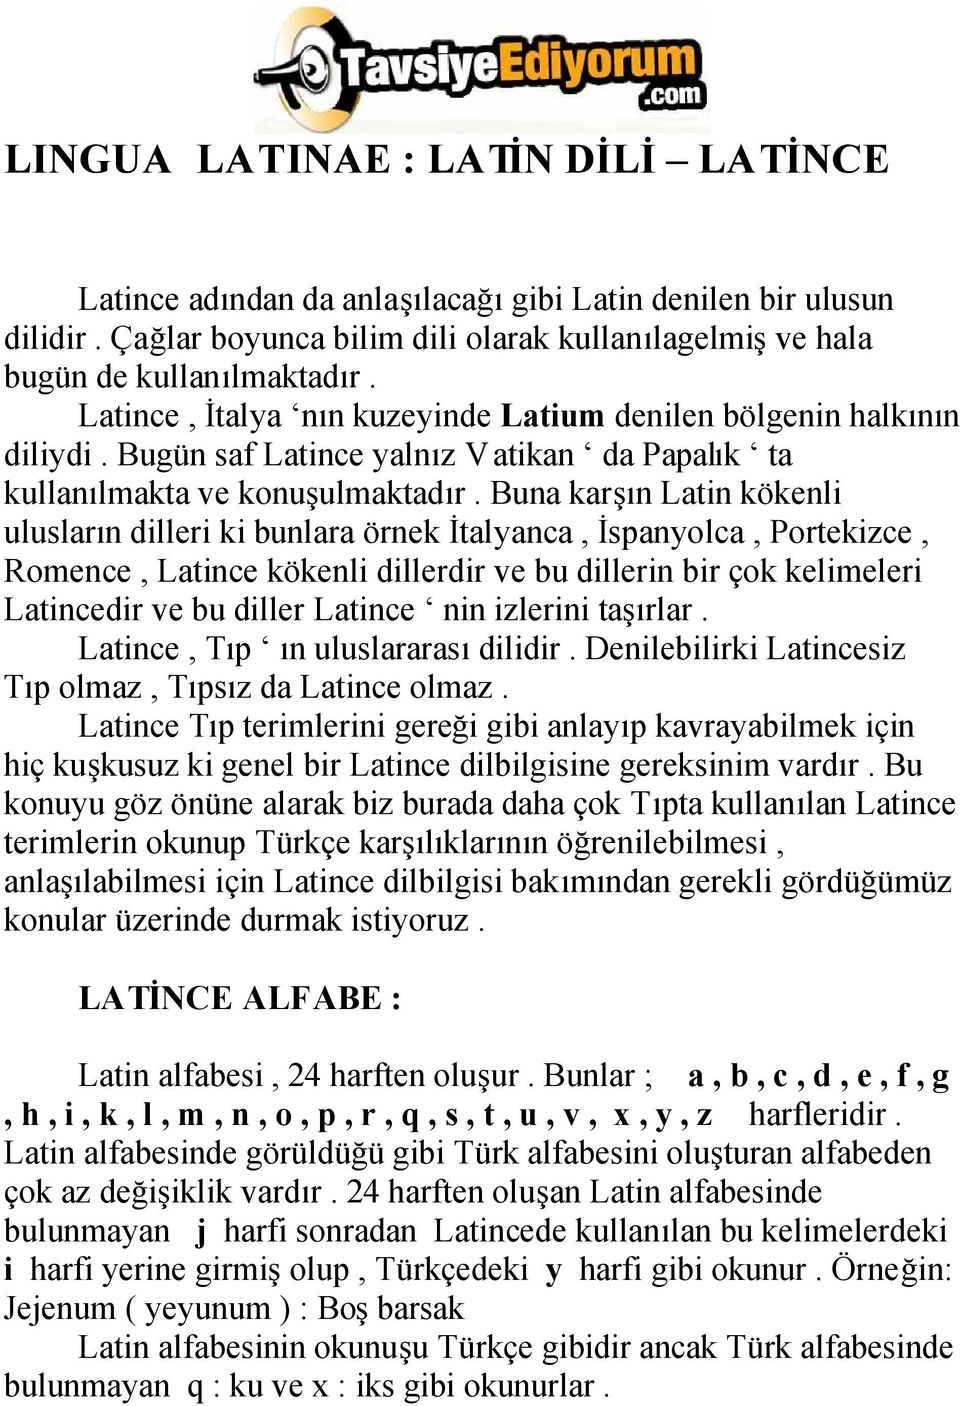 Latin Dili